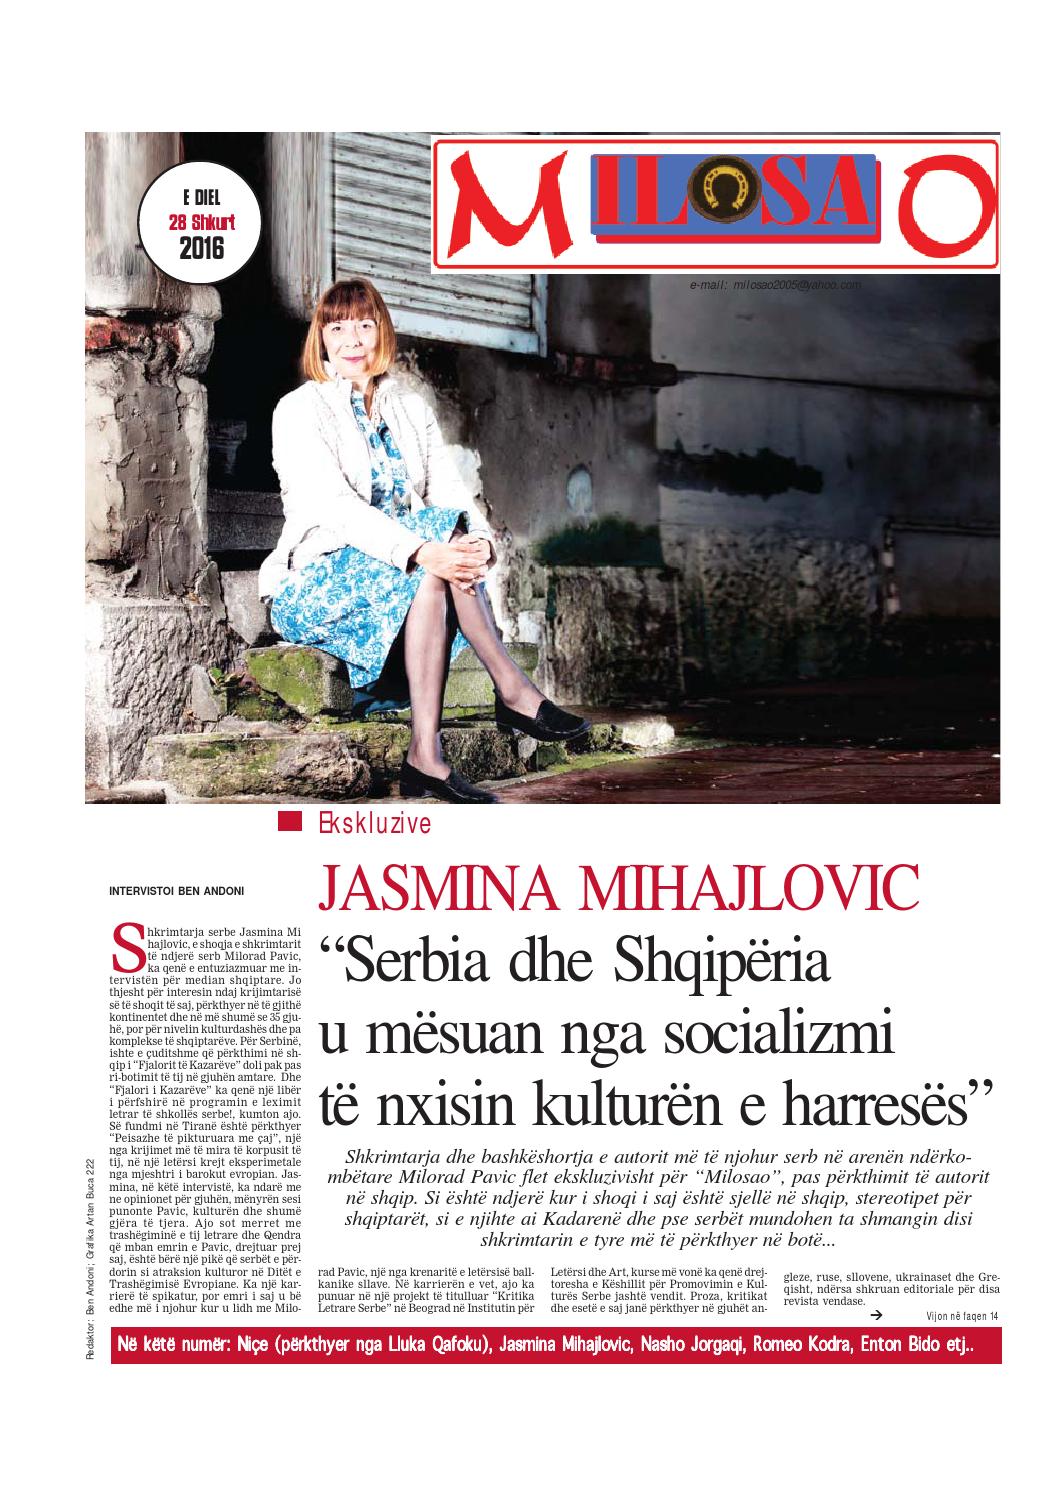 Јасмина Михајловић - Србија и Албанија су научене у социјализму да негују културу заборава